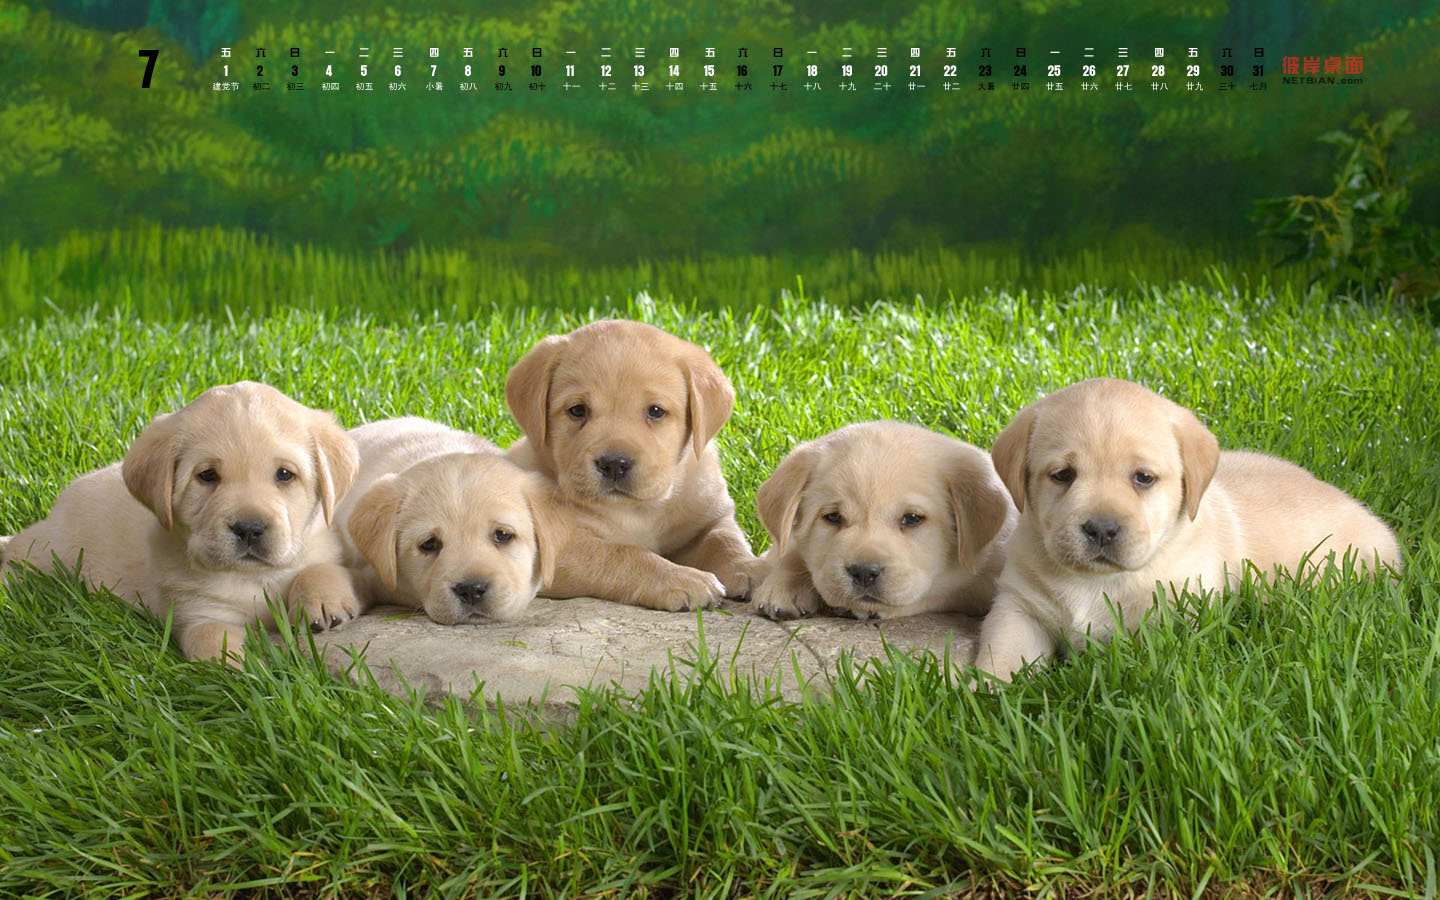 Cute Puppy July 2011 Calendar Desktop Wallpaper